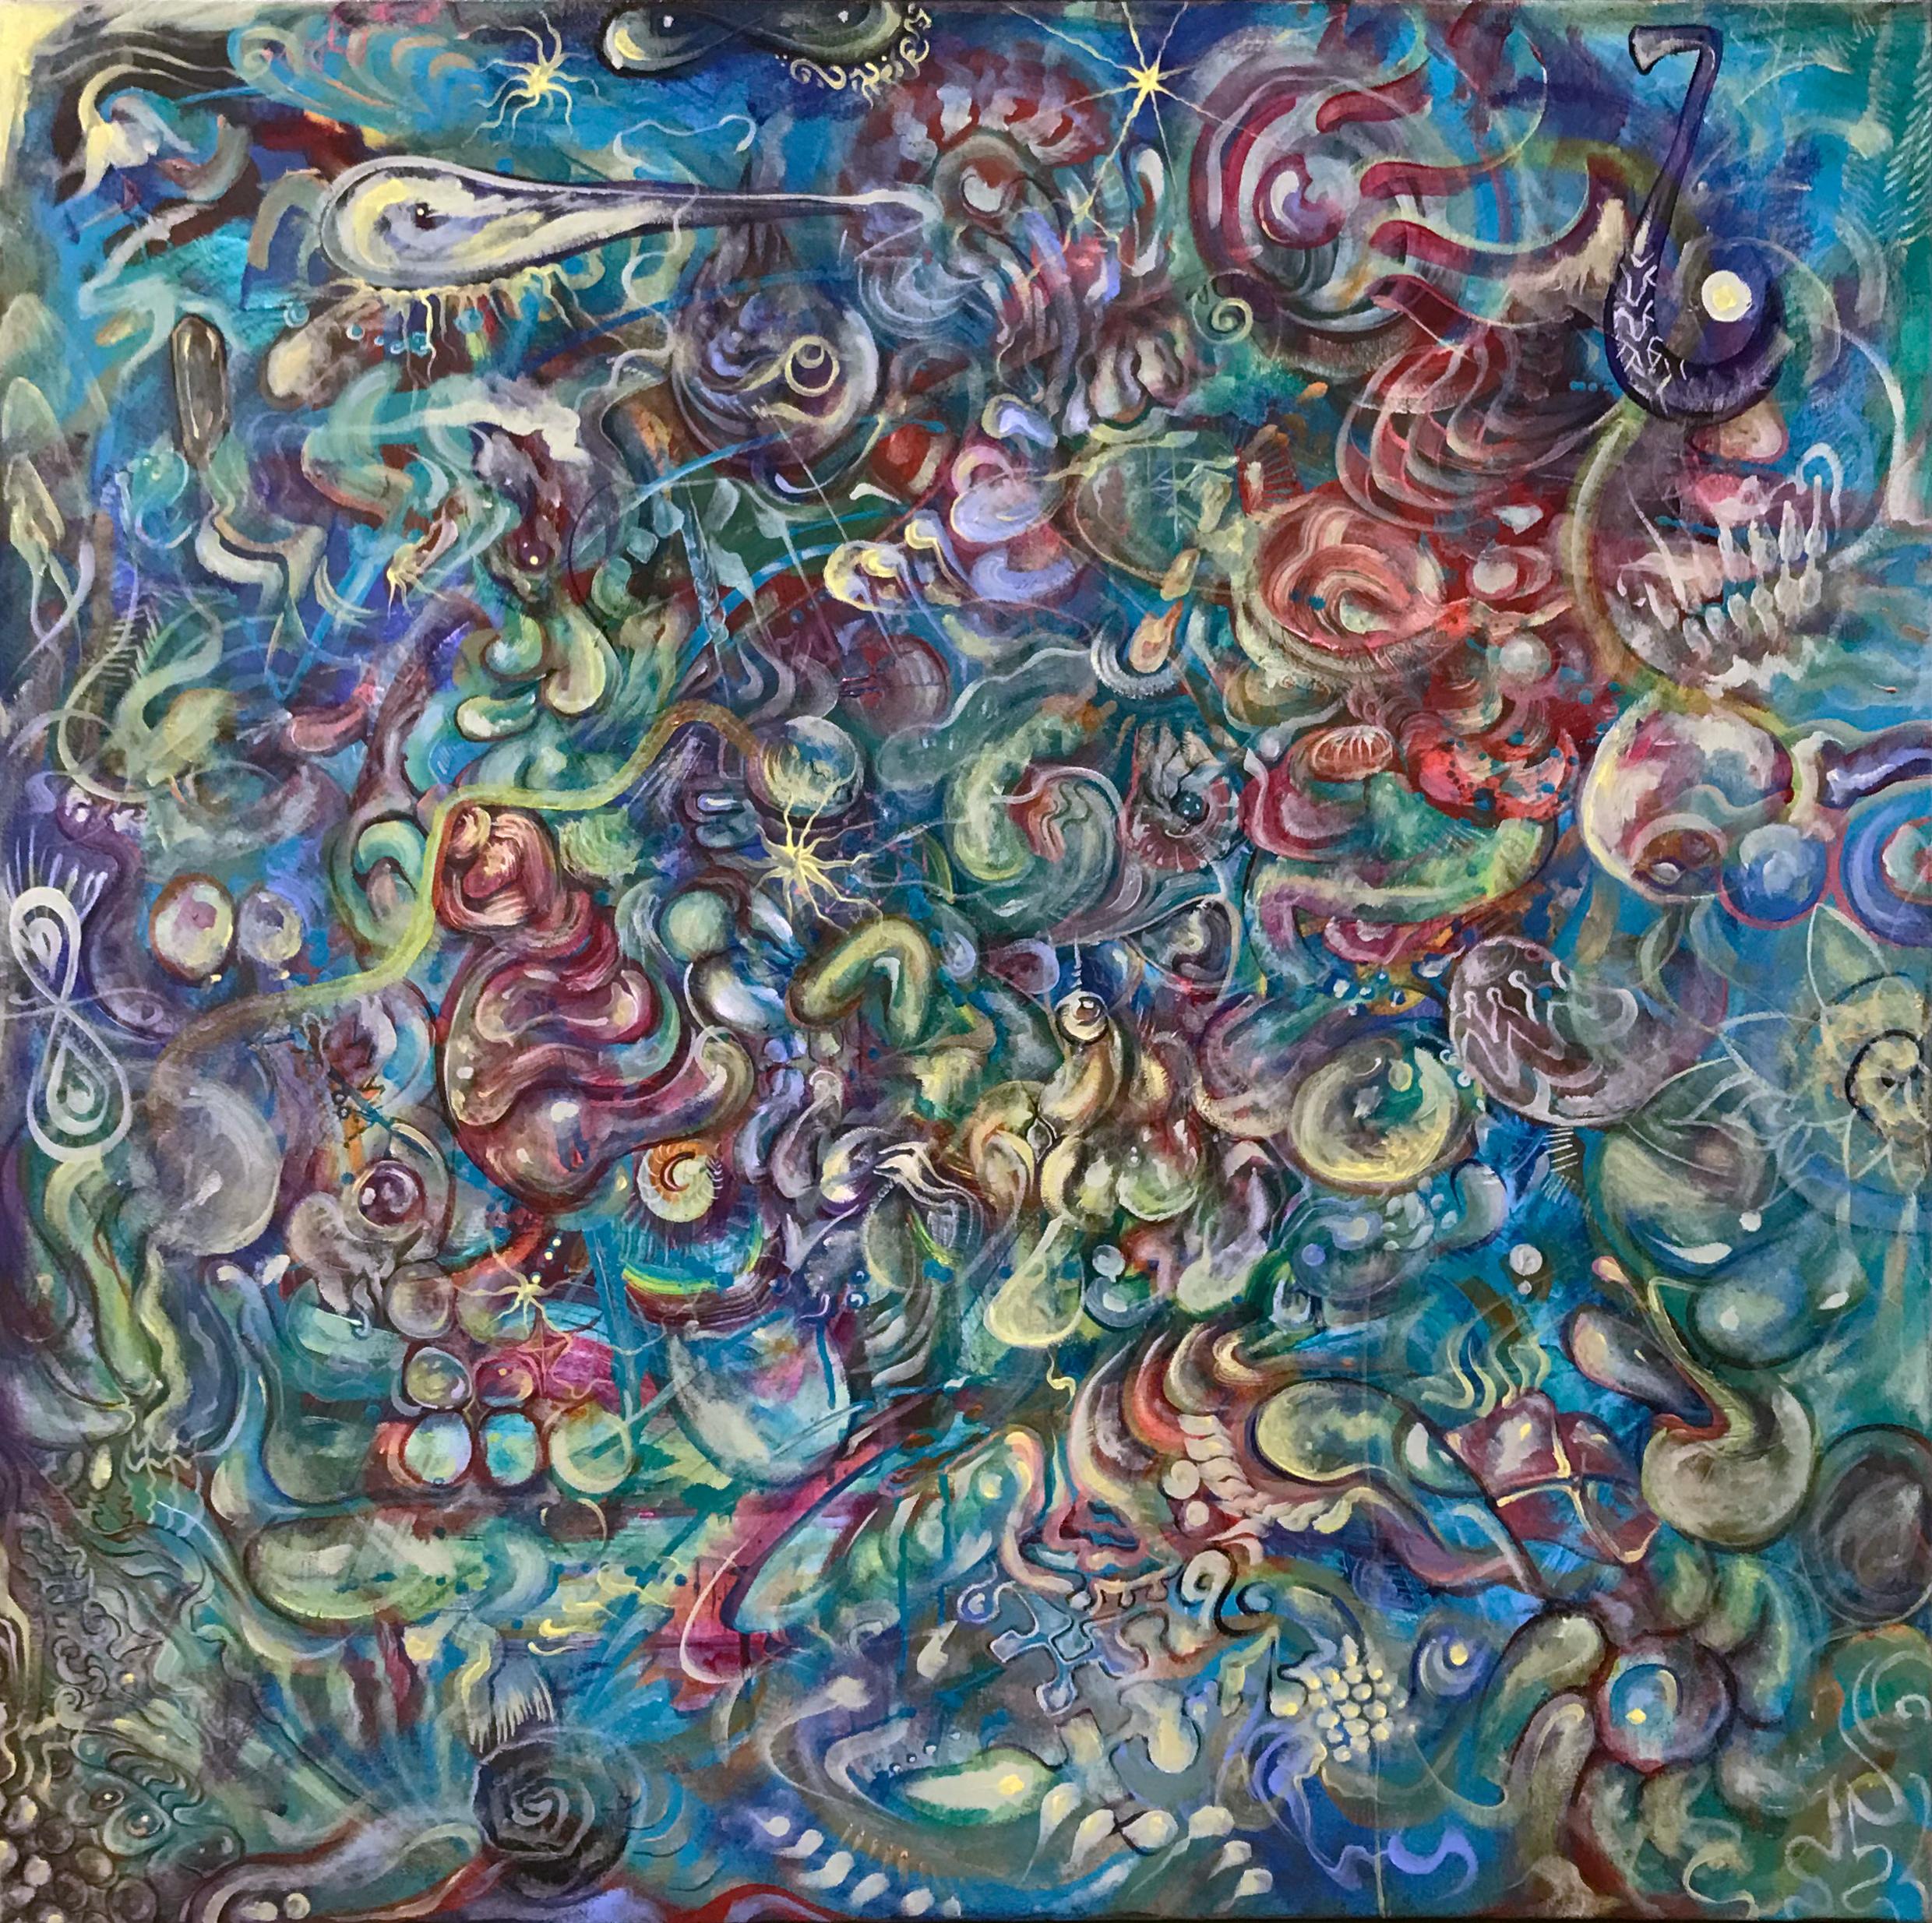 Abstract Painting Ethan Meyer - « Le nuage d'inconnu », peinture abstraite sur toile, acrylique, colorée